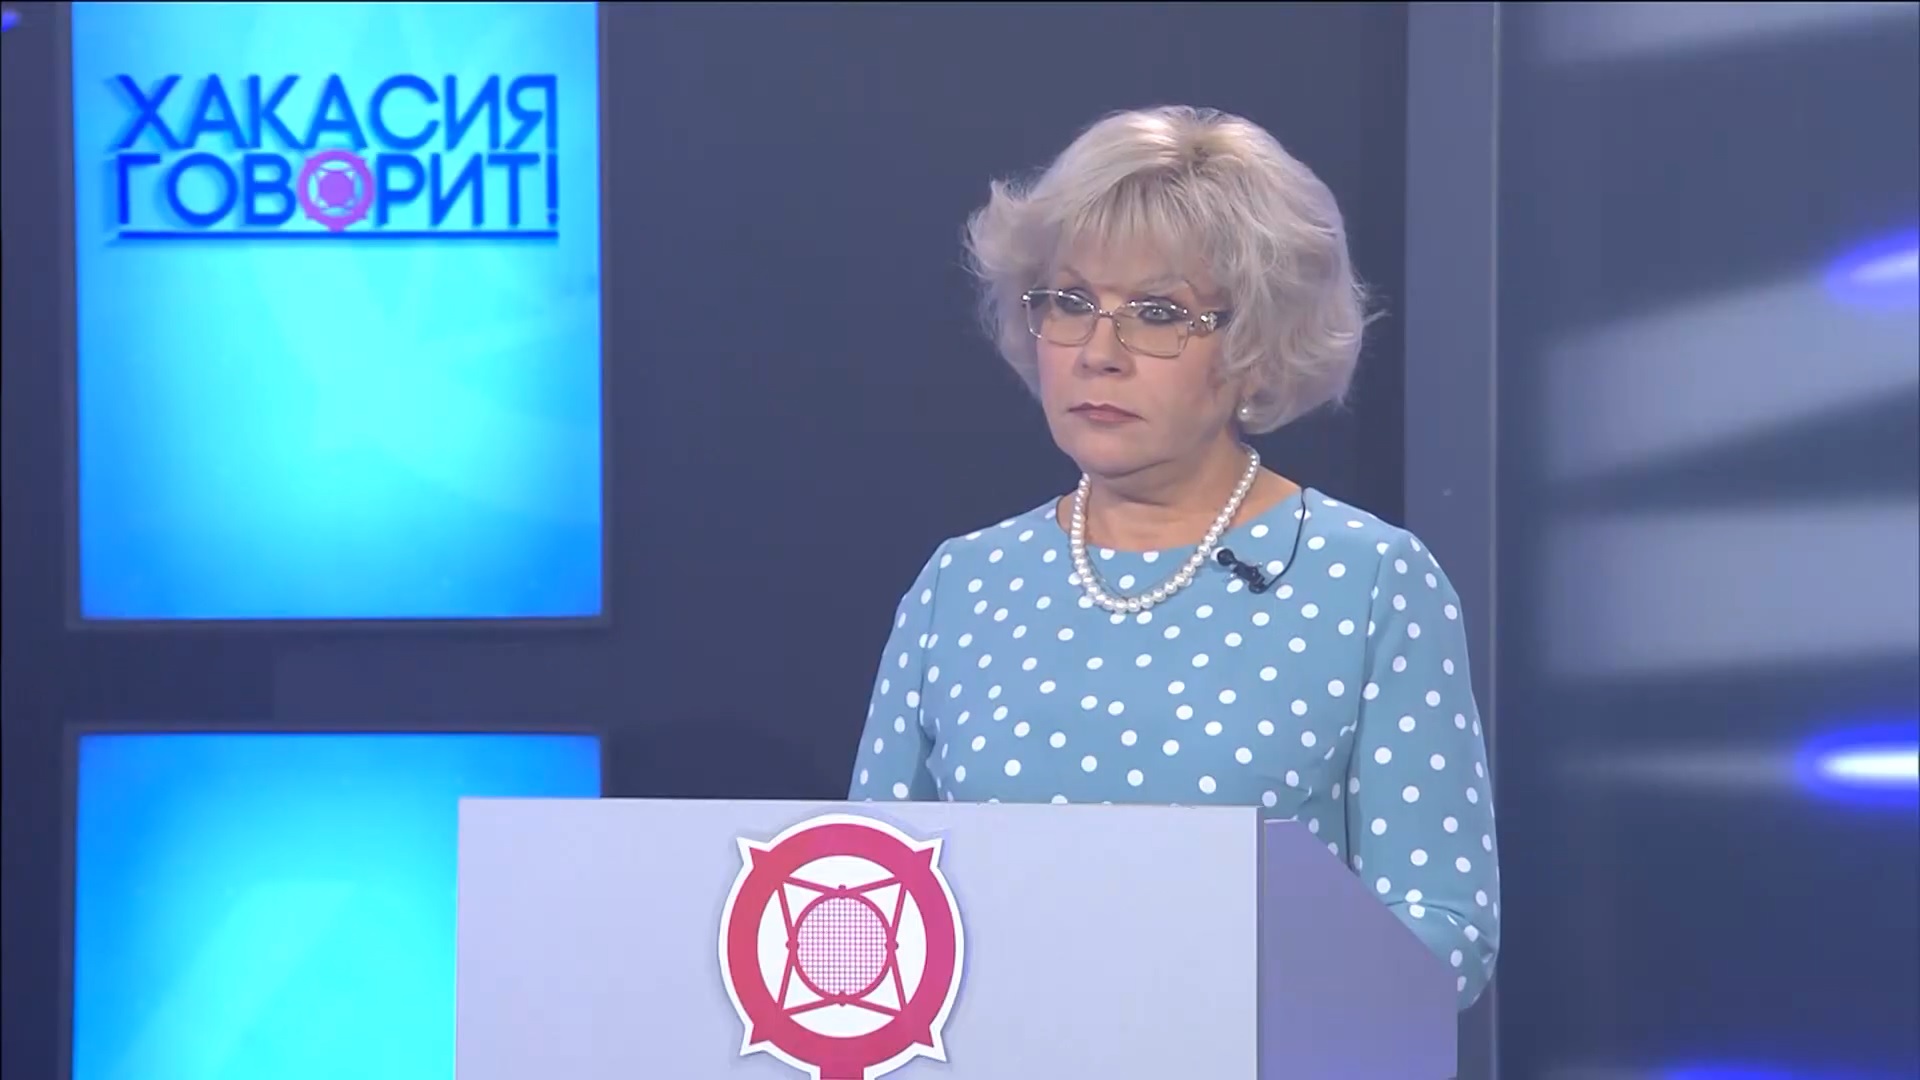 Светлана Могилина в программе «Хакасия говорит»